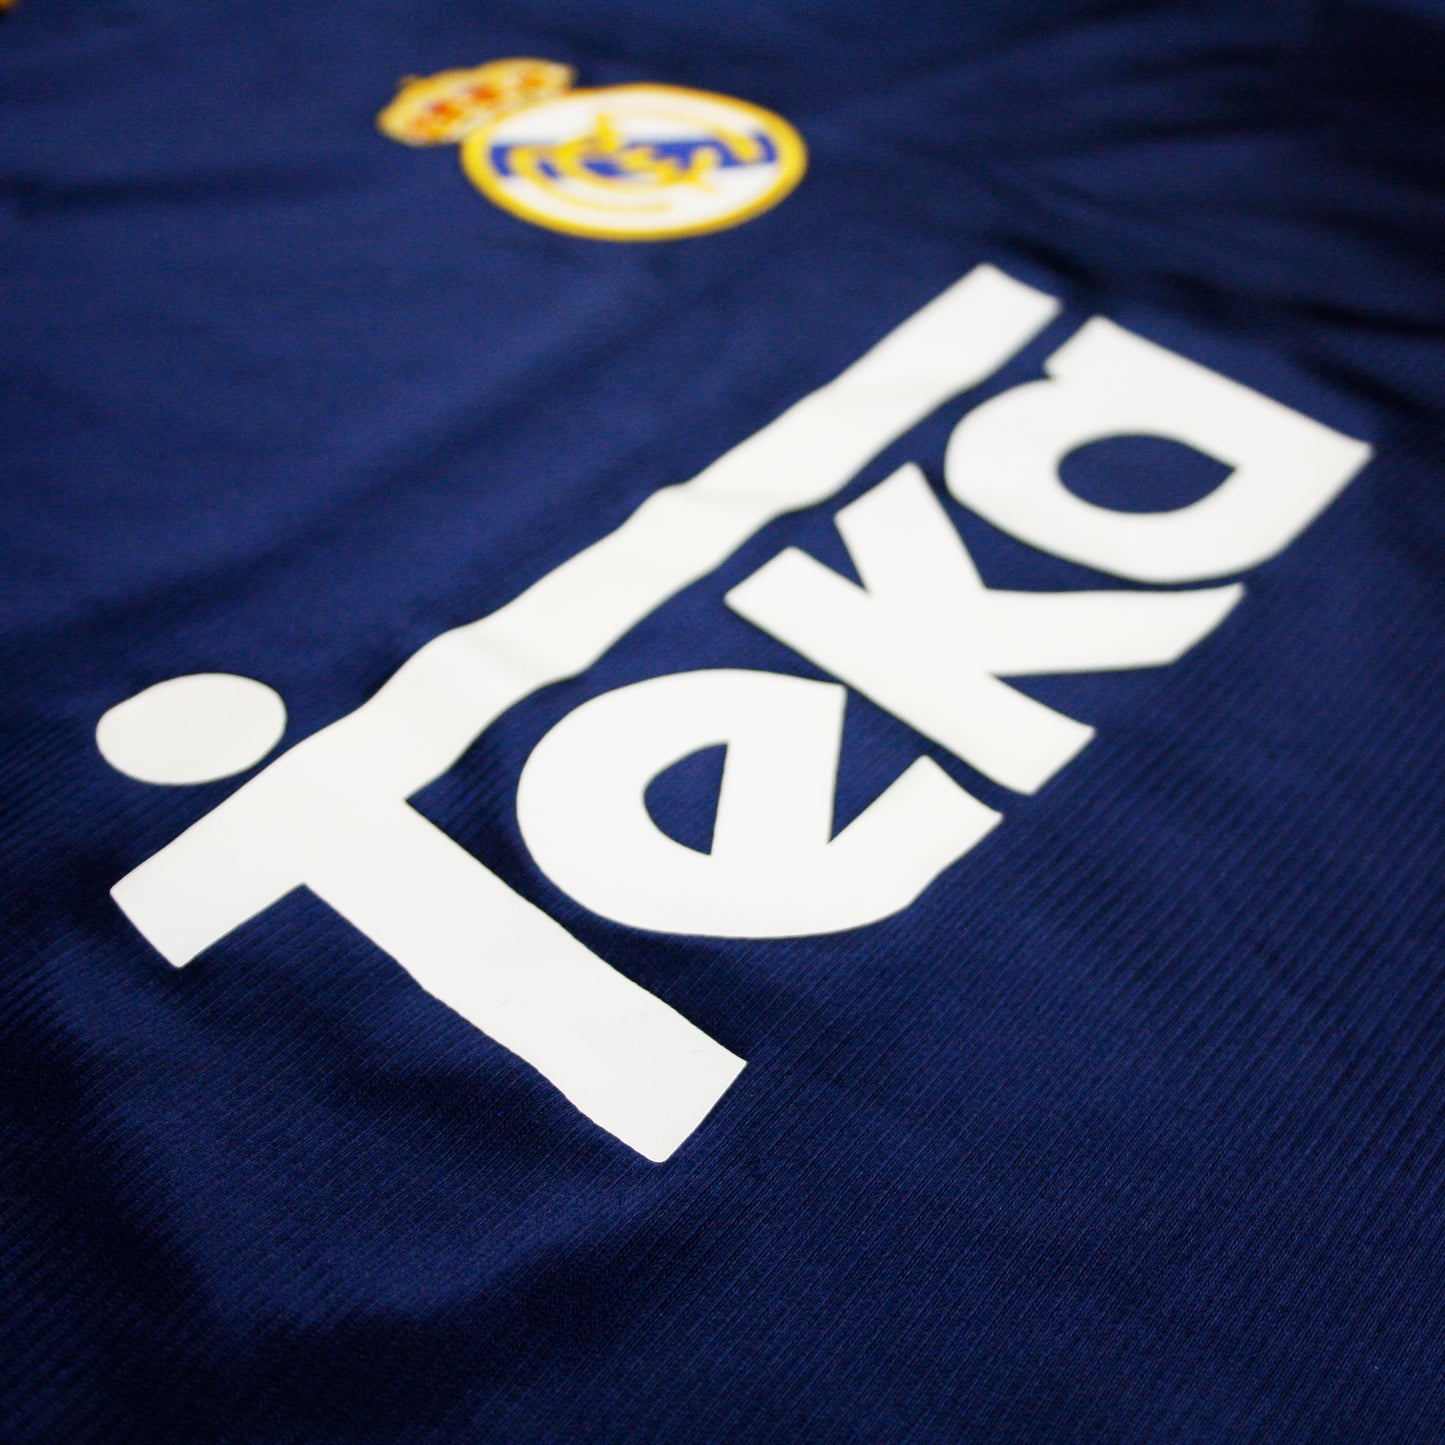 Real Madrid 98/99 • Camiseta Tercera • L